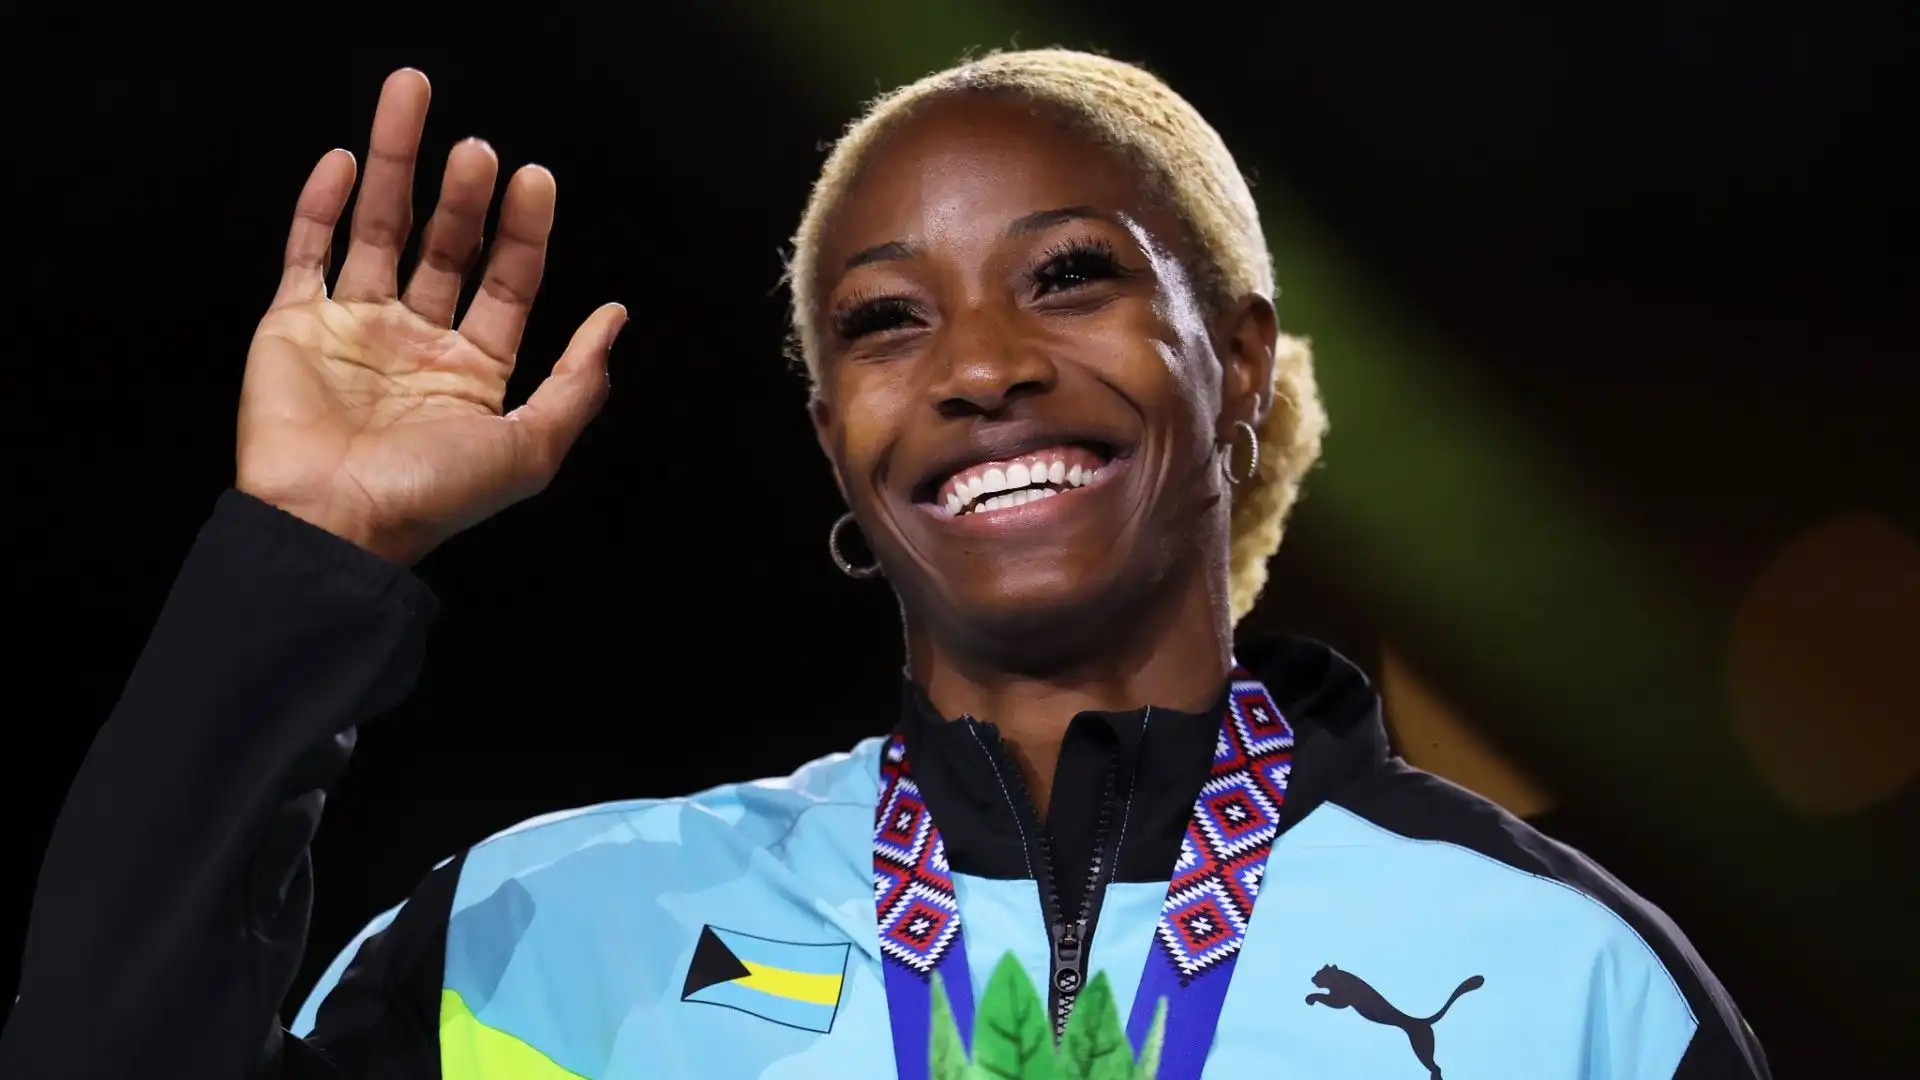 Campionessa olimpica dei 400 metri piani a Rio de Janeiro 2016 e Tokyo 2020